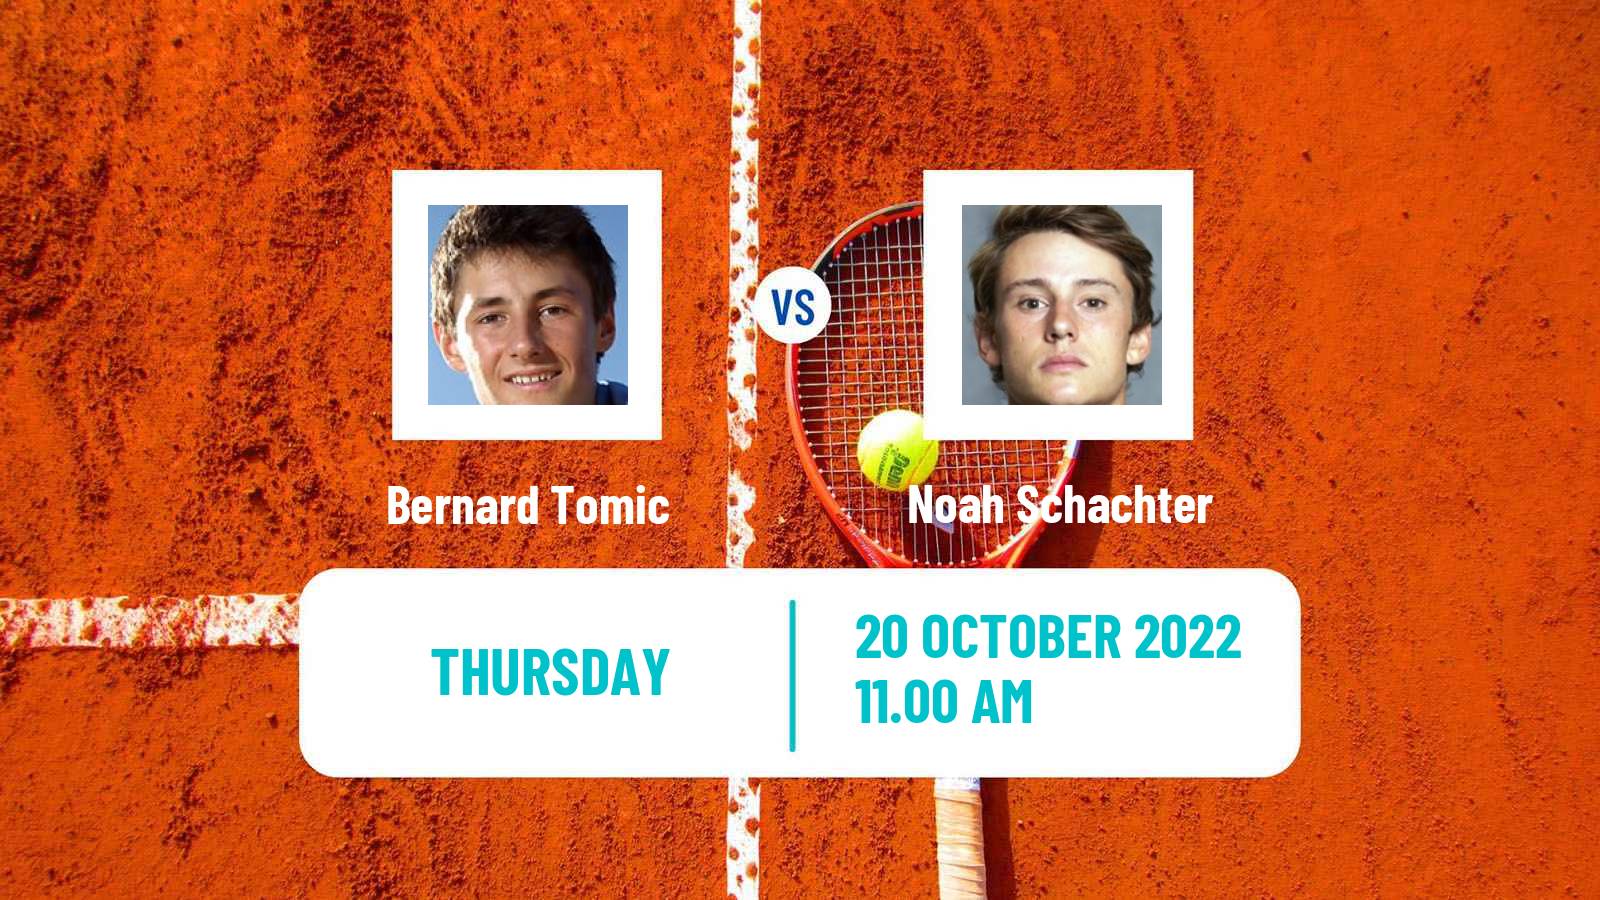 Tennis ITF Tournaments Bernard Tomic - Noah Schachter